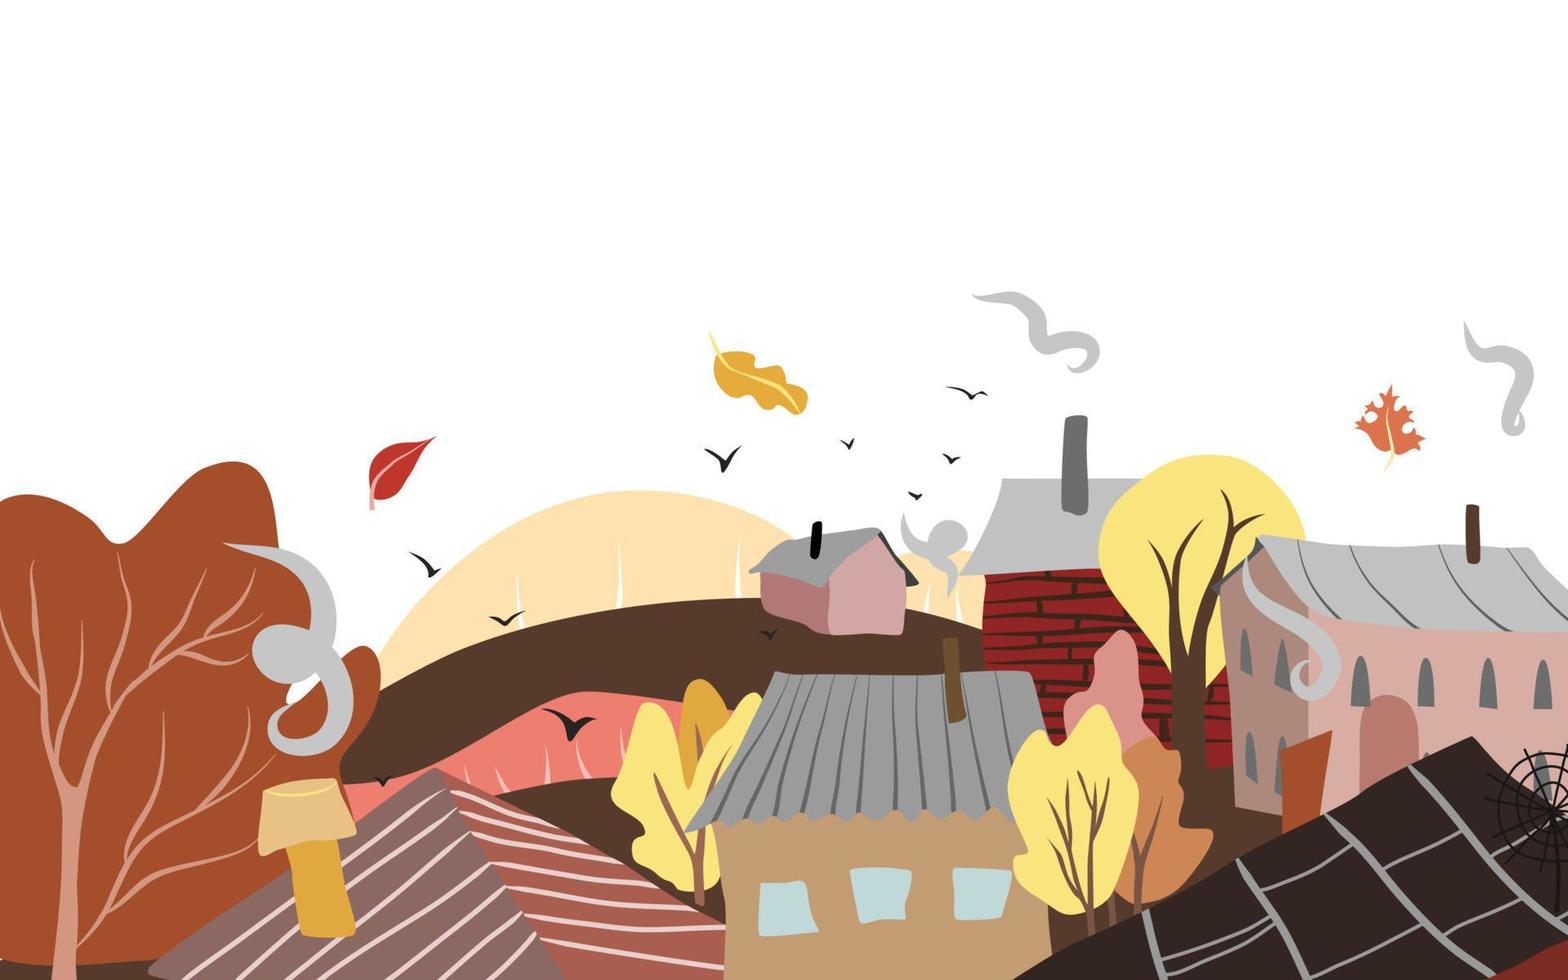 vetor paisagem de outono com casas simples e árvores. ilustração rural plana dos desenhos animados em branco na orientação horizontal. cores pastel suaves